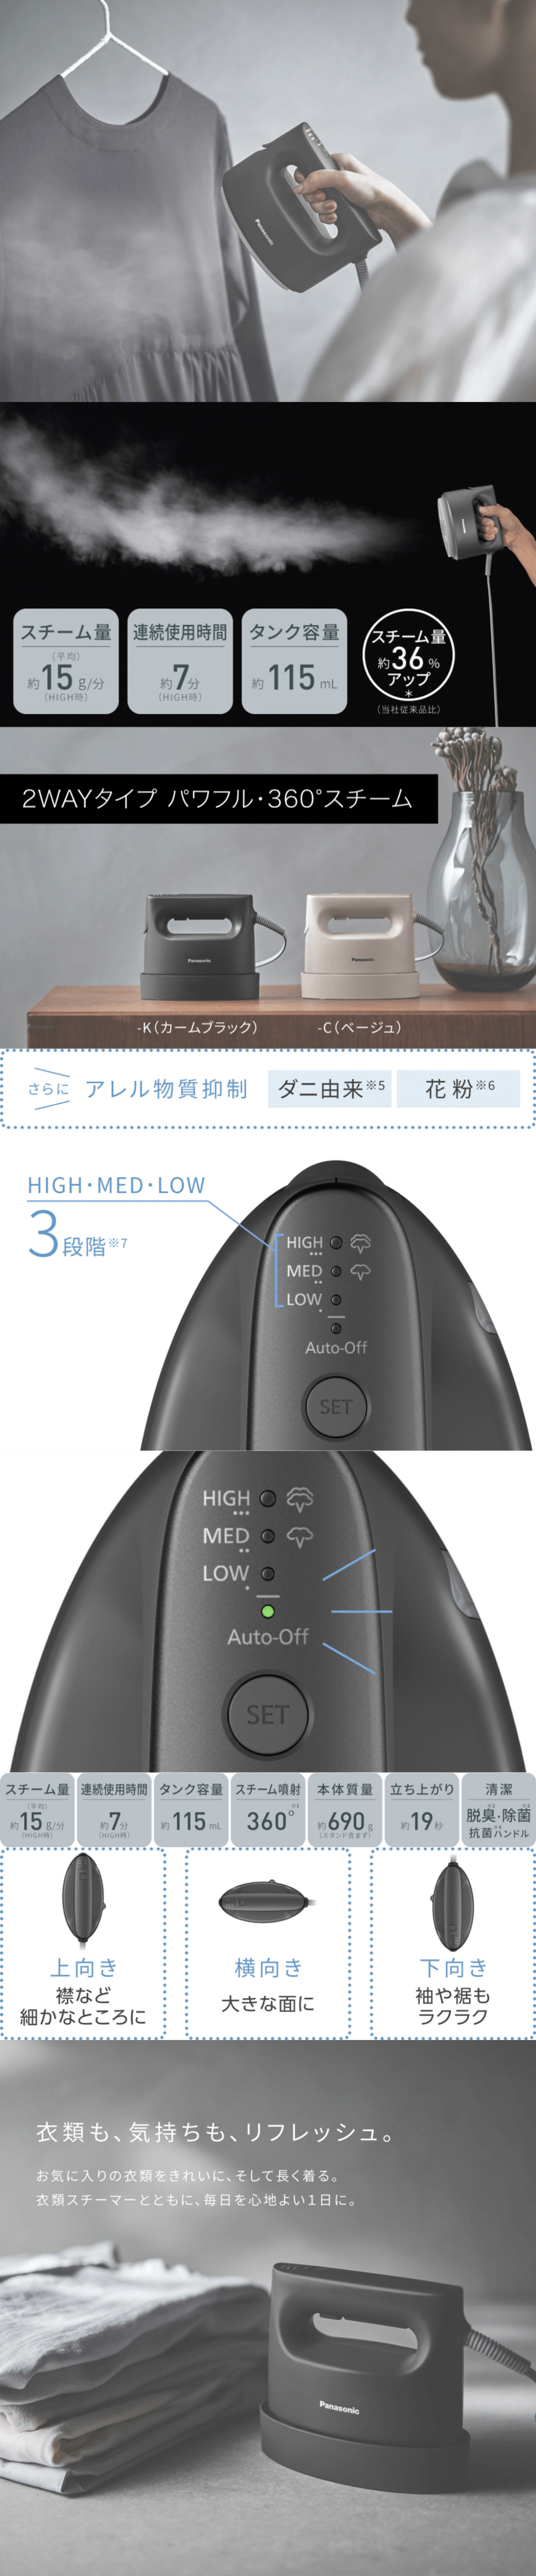 【新品】日本100V电器 日版松下蒸汽挂烫机NI-FS790-C 米色【加拿大直邮】